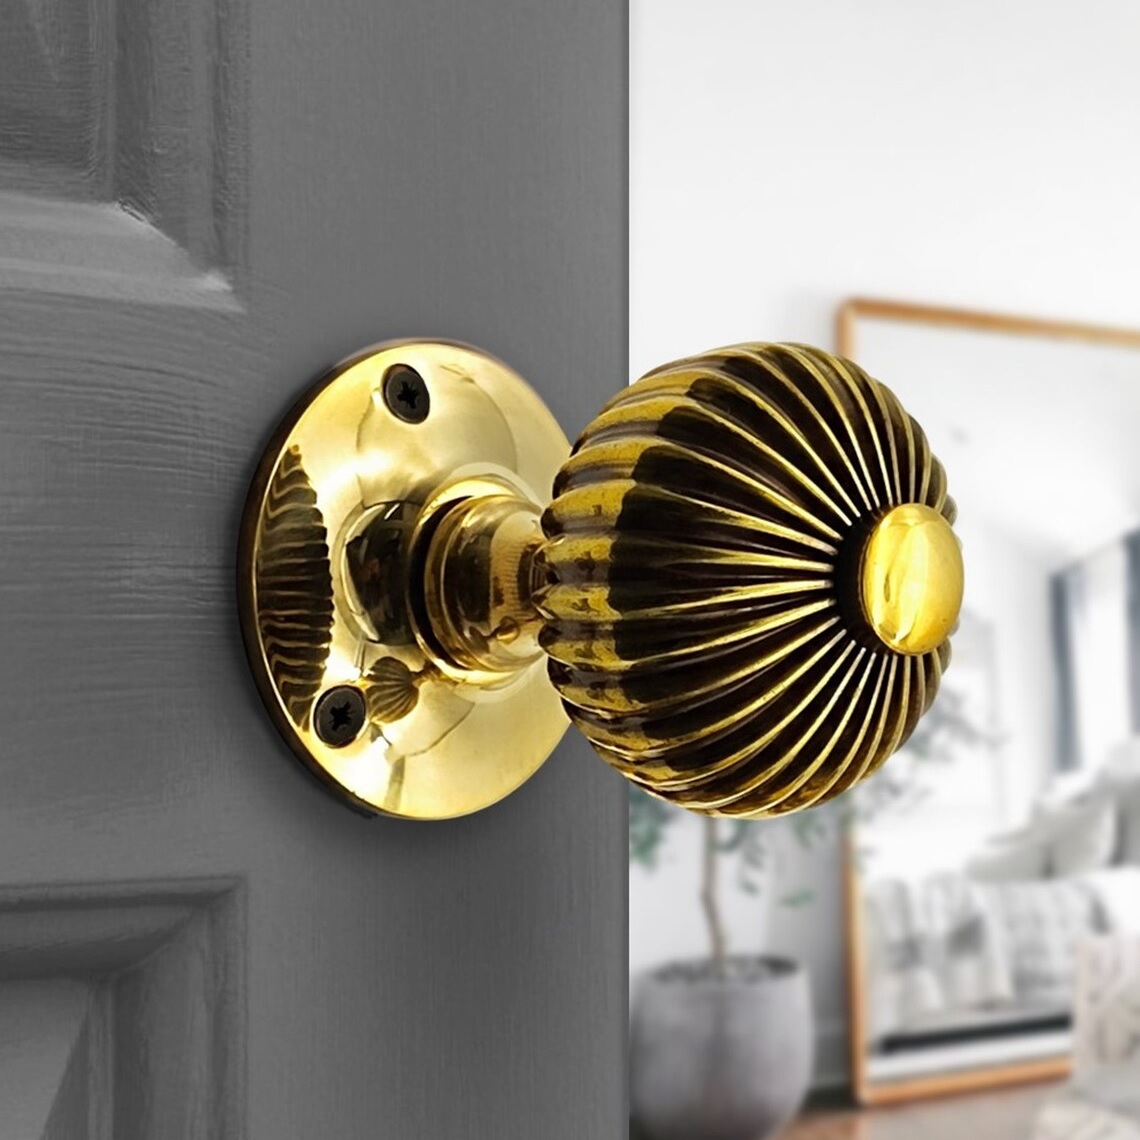 reeded door knob with polished finish antique brass details bright vintage door knobs for mortice door heirloom style hardware for interior doors bathroom bedroom closet doorknobs